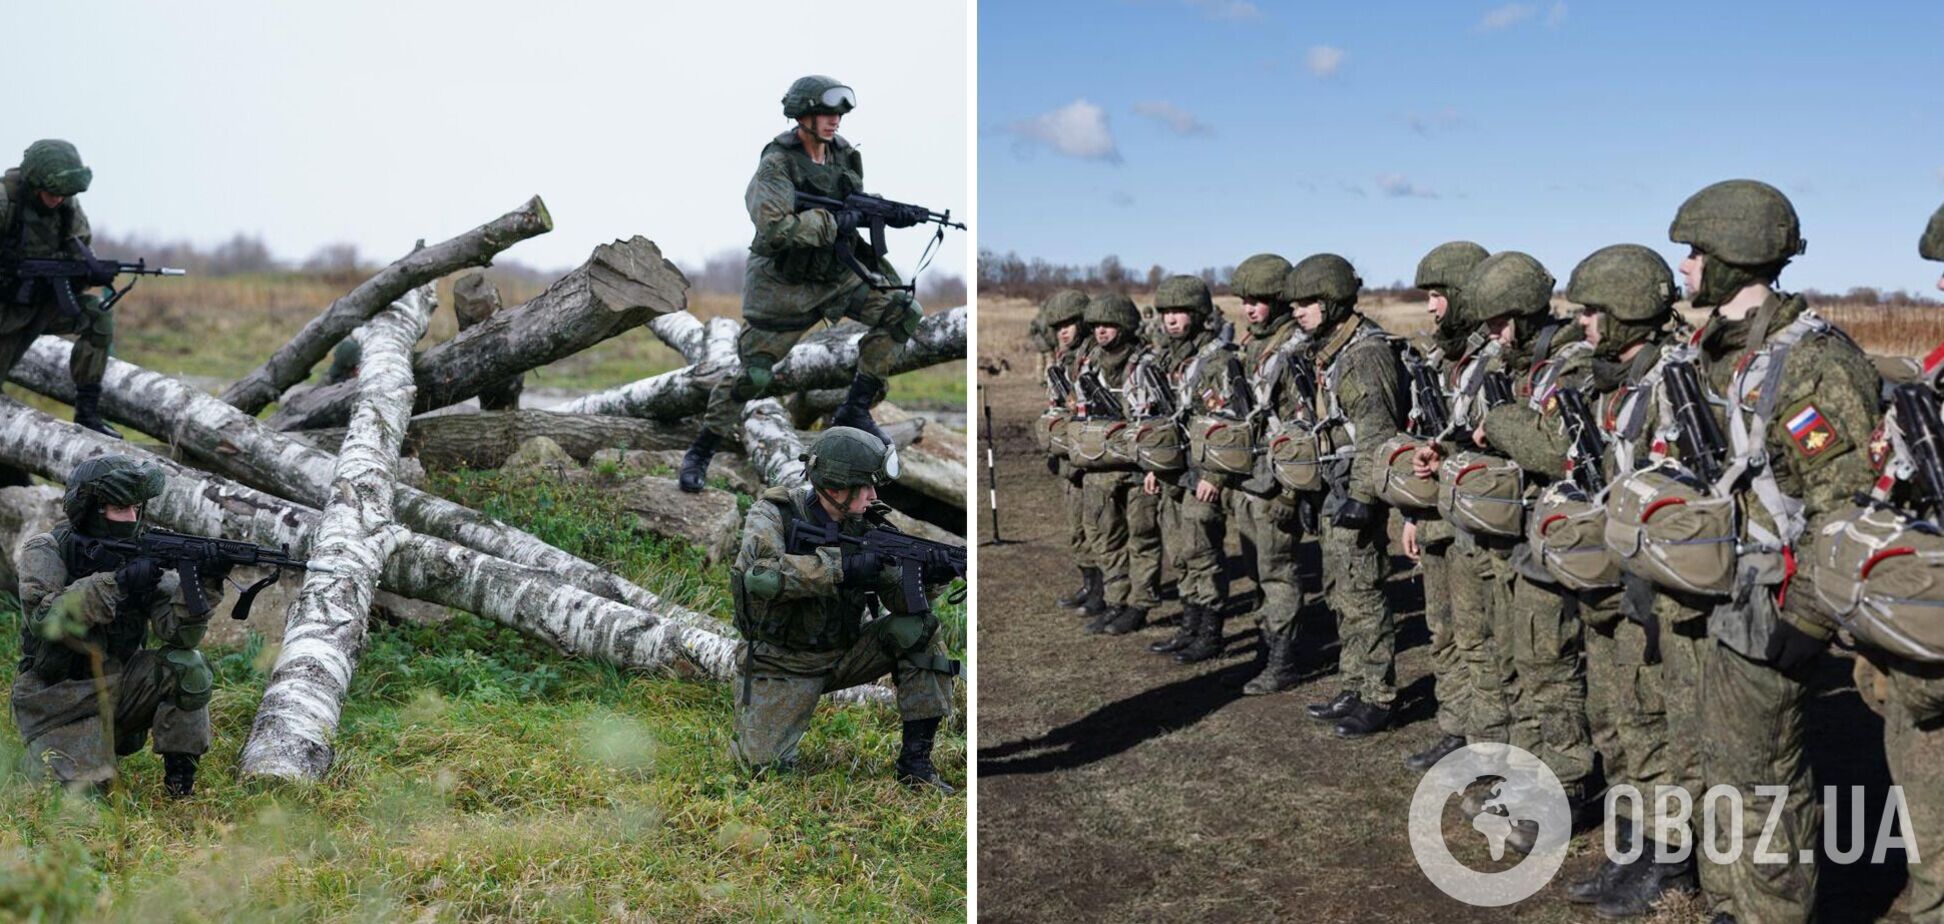 'Командующего армии отстранили': оккупант признался, что в армии РФ большие проблемы. Аудио